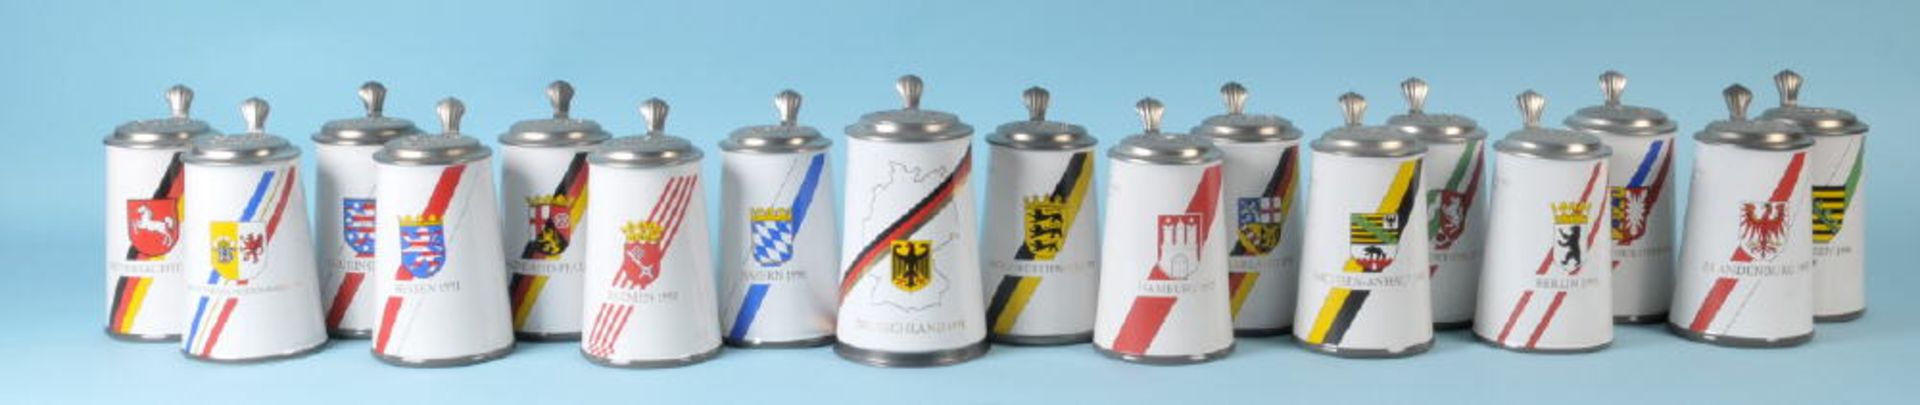 Bierkrüge mit Zinndeckeln, 17 Stück "Henninger-Bräu"Steinzeug, farbige Dekors mit den Wappen der